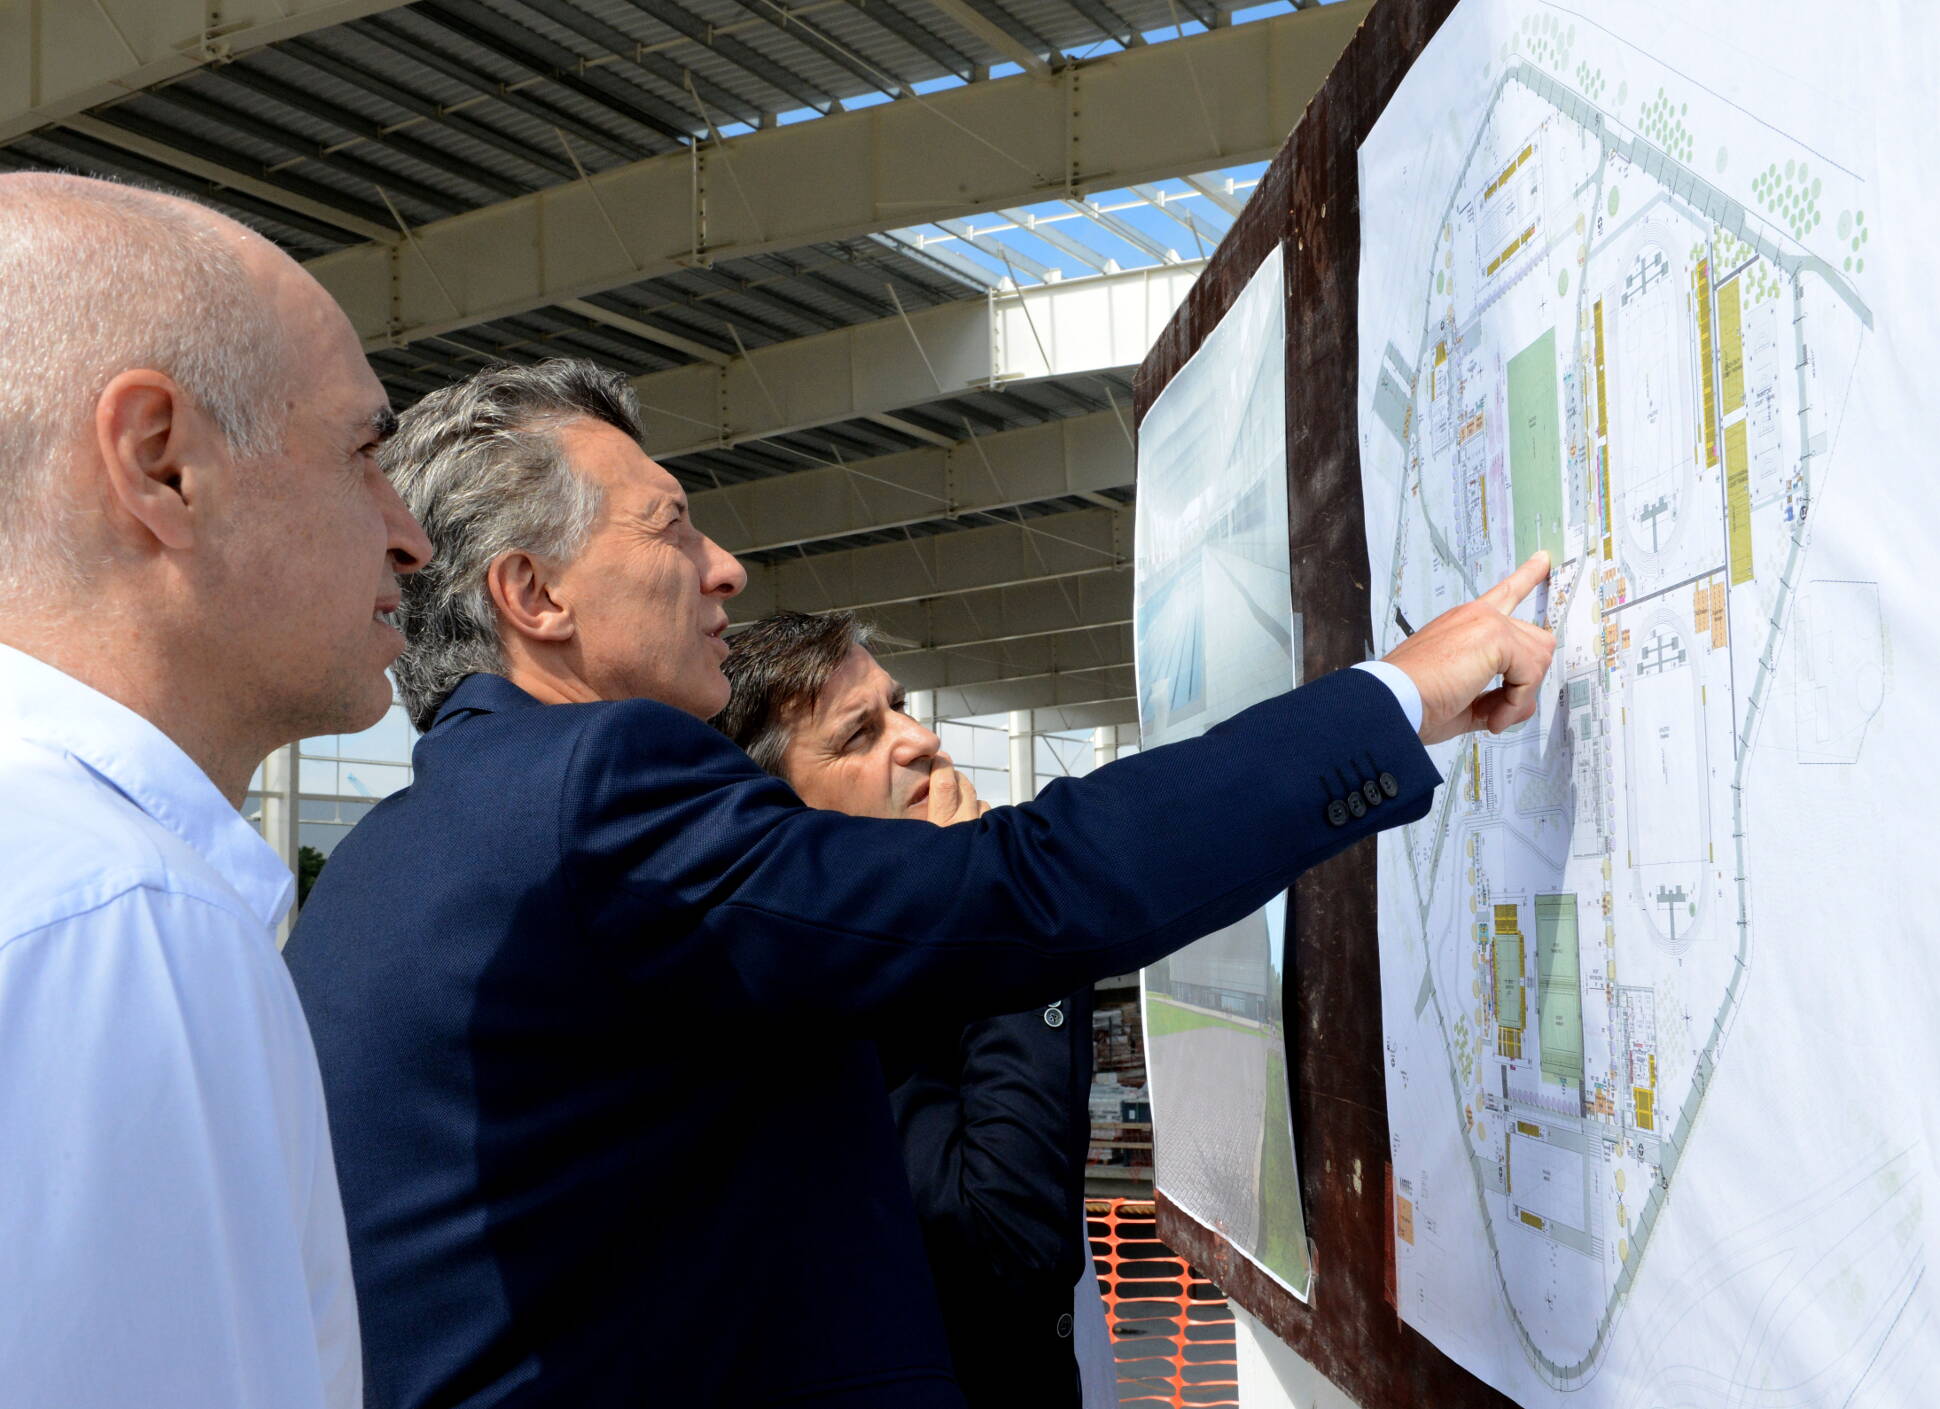 El presidente Macri recorrió las obras del Parque Olímpico  